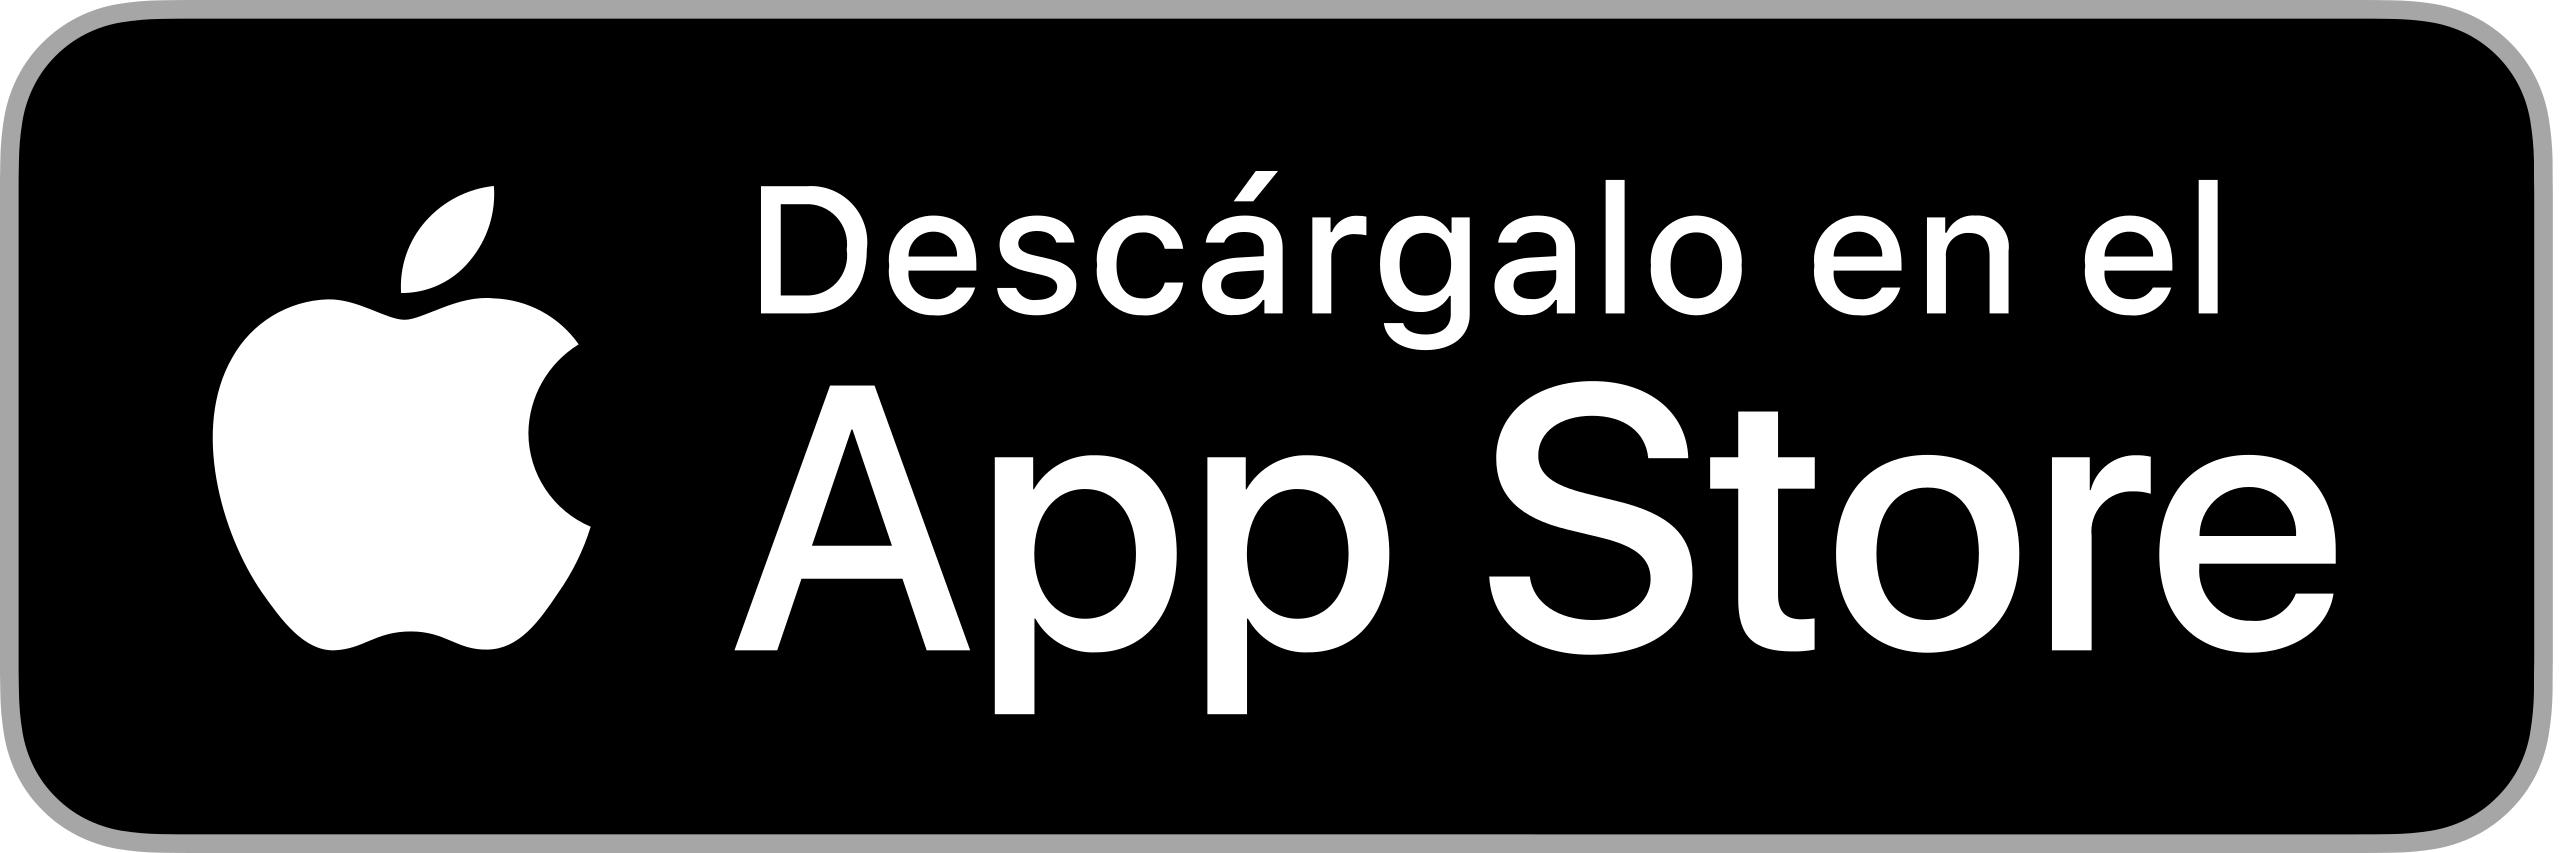 AppStore_esencial